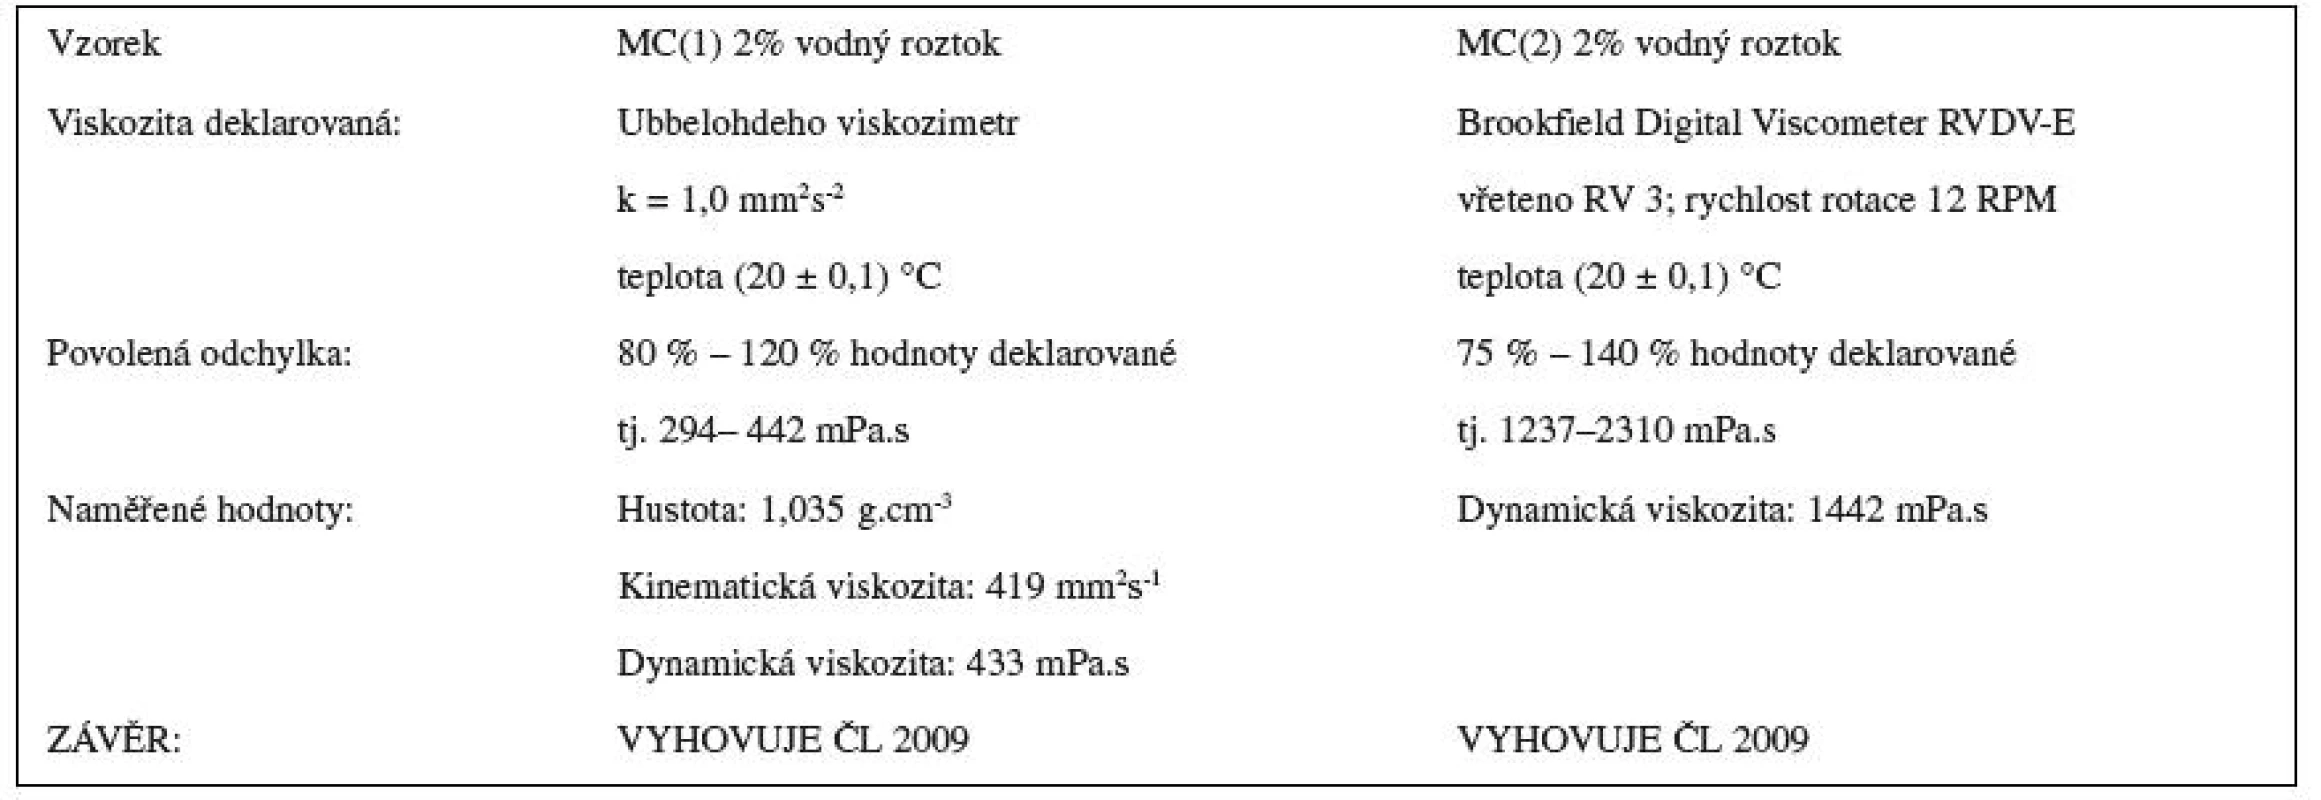 Stanovení zdánlivé viskozity methylcelulosy dle ČL 2009